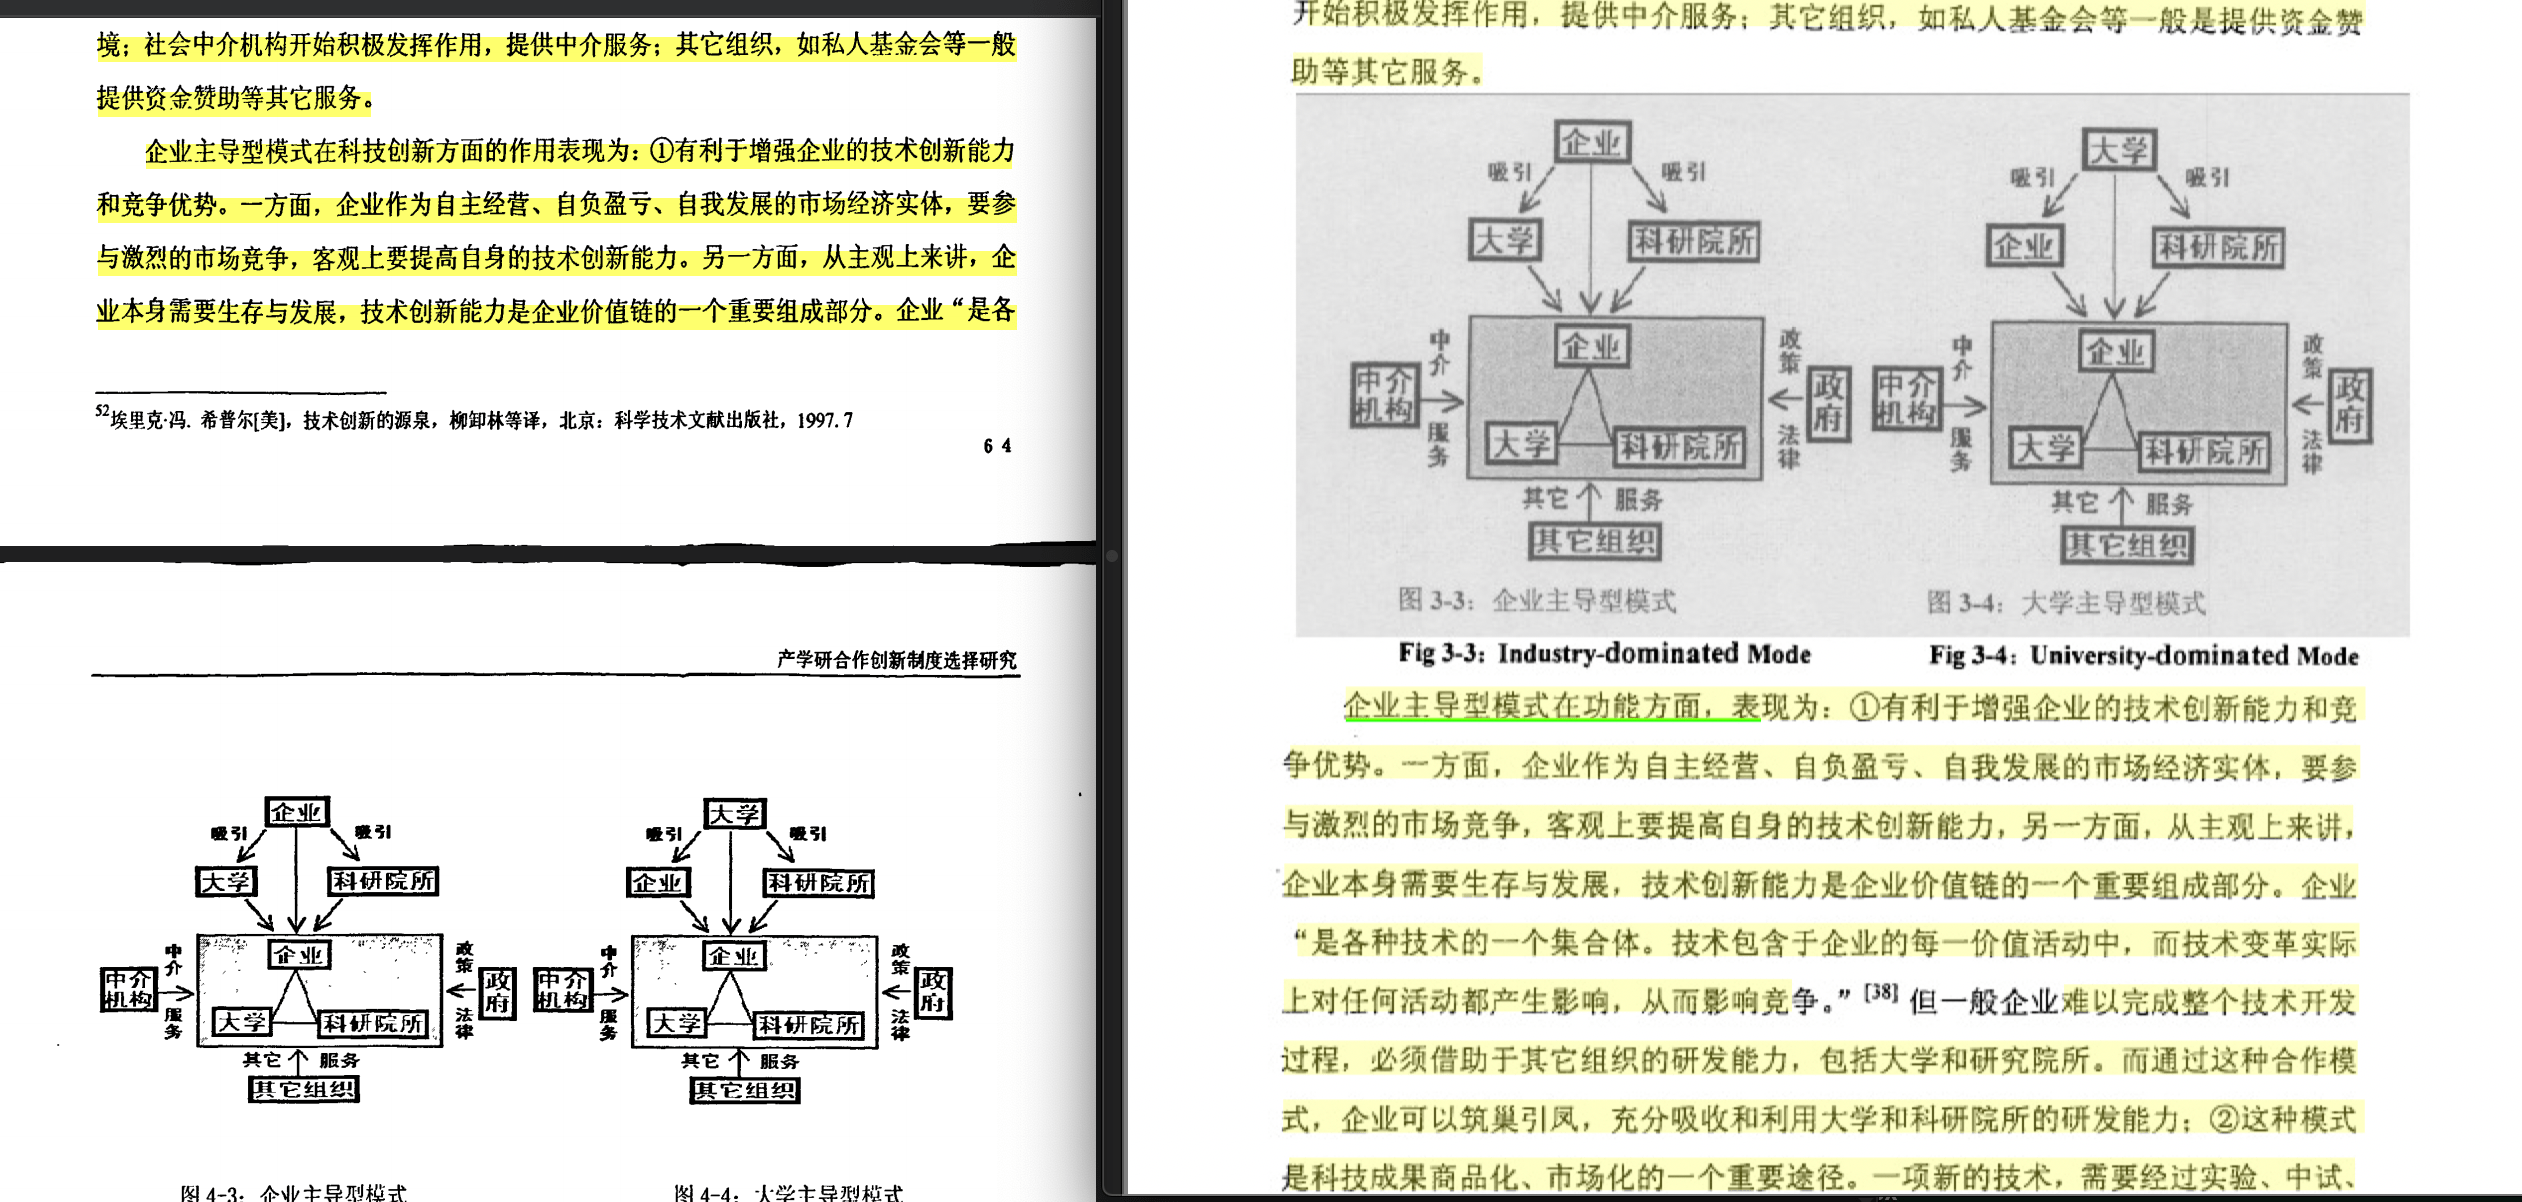 南京大学博士王卓君毕业论文被指涉嫌抄袭多人论文